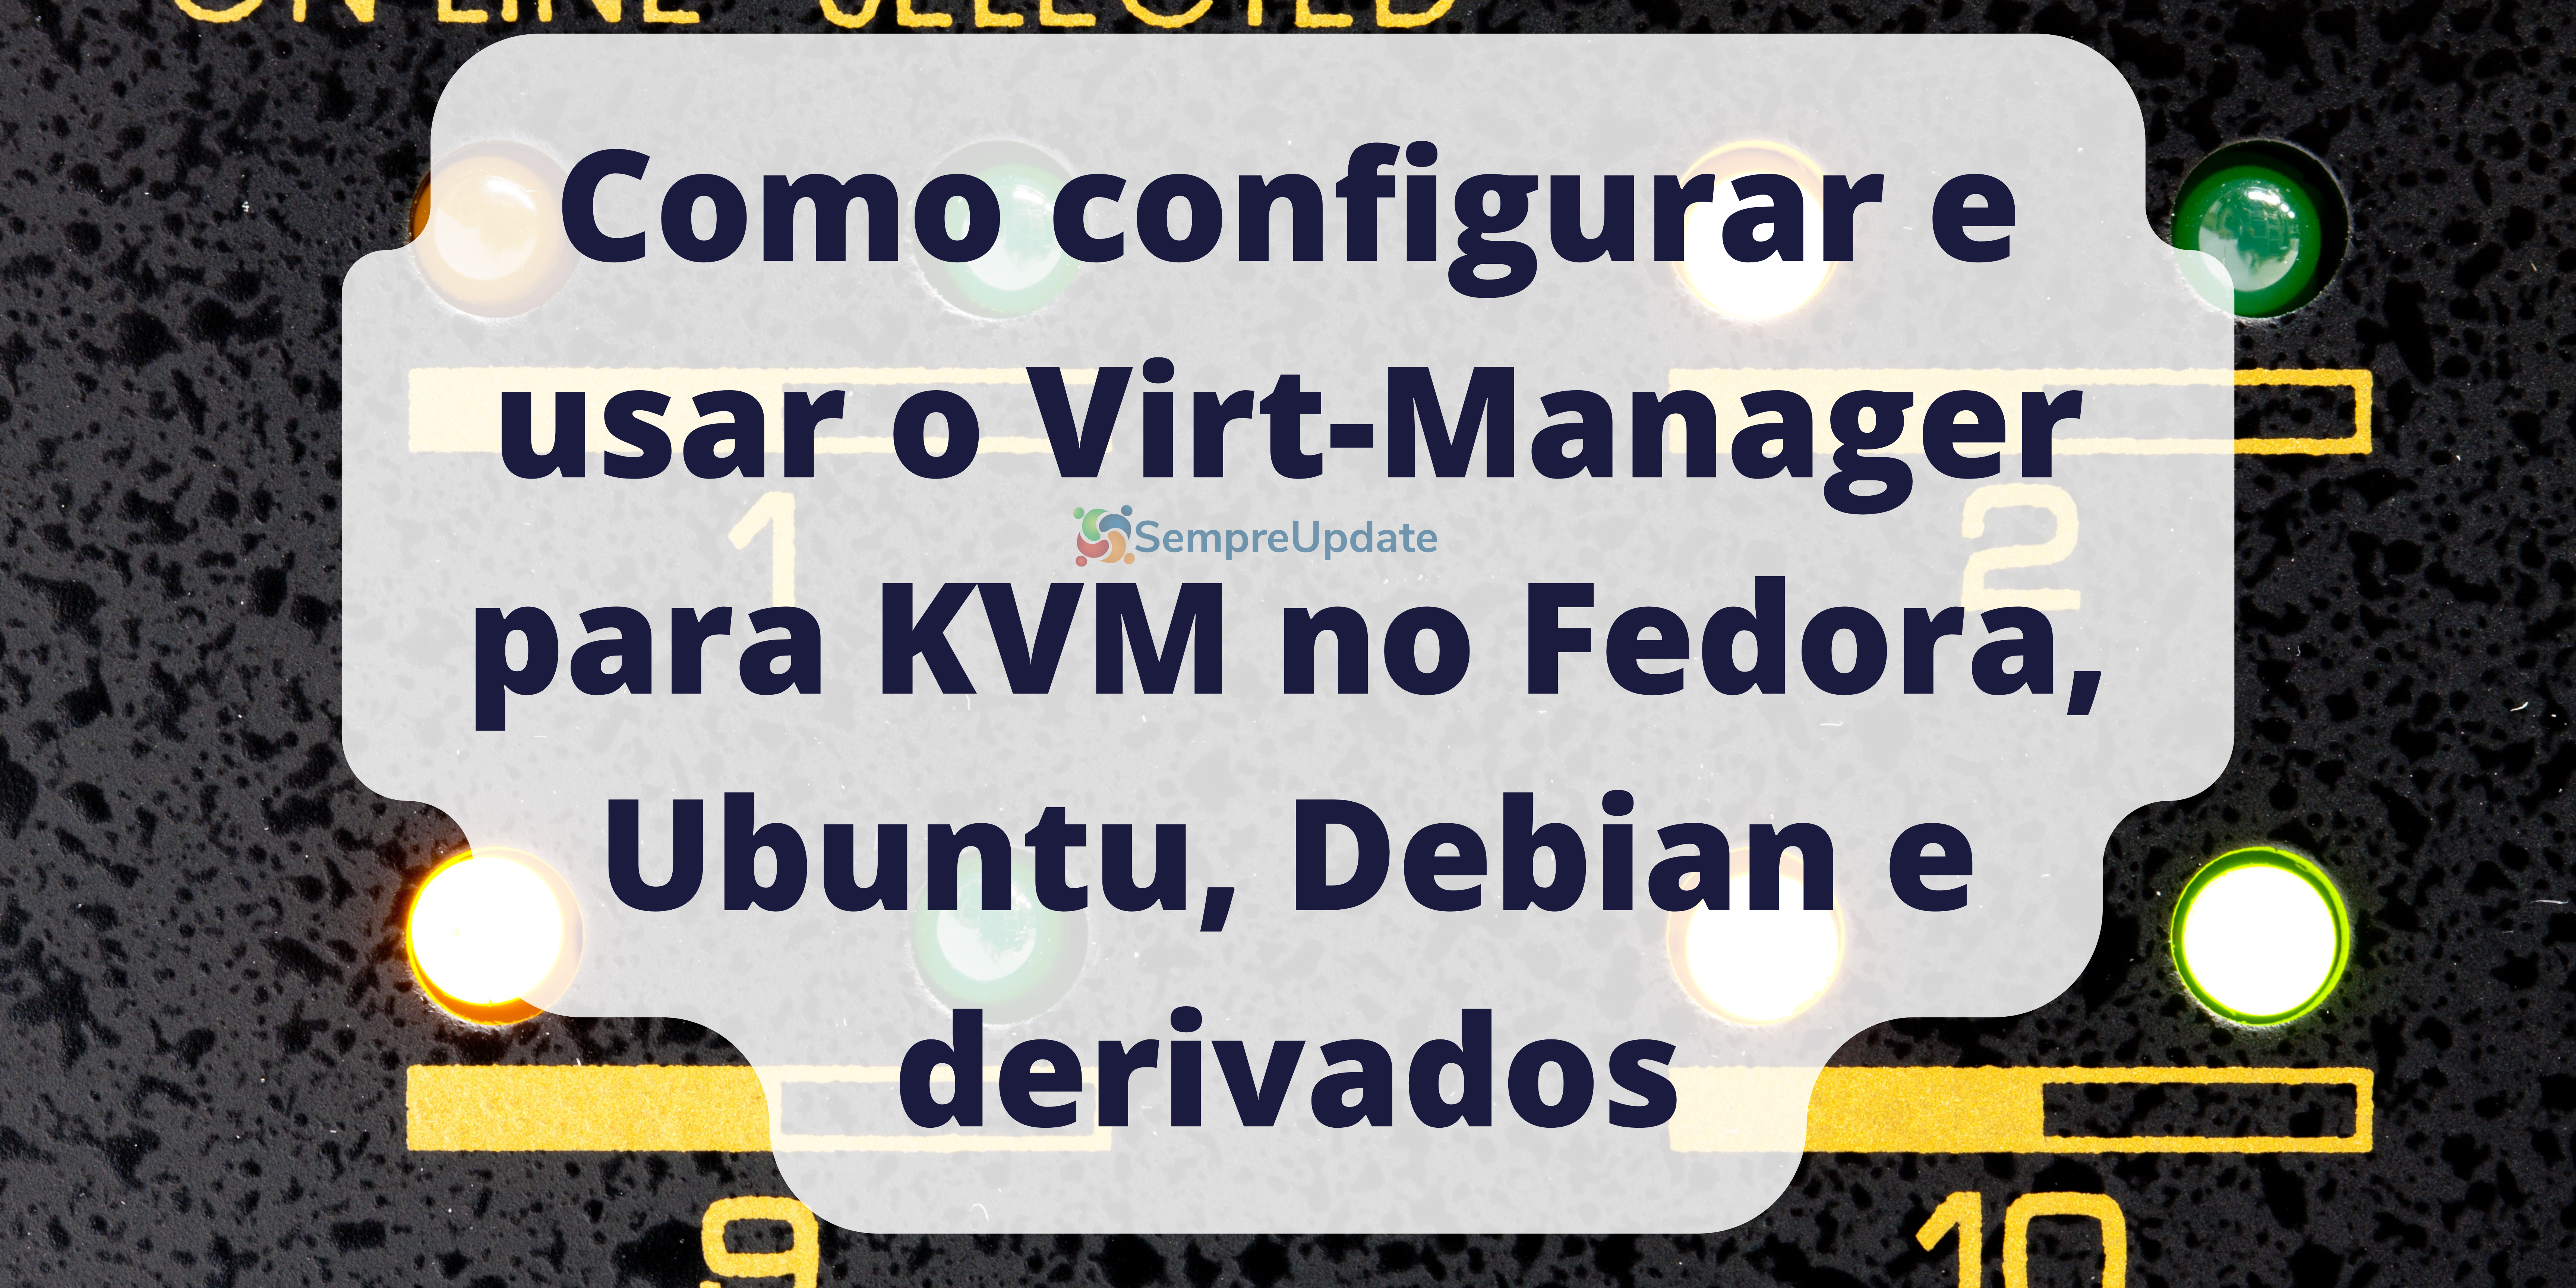 Como configurar e usar o Virt-Manager para KVM no Fedora, Ubuntu, Debian e derivados